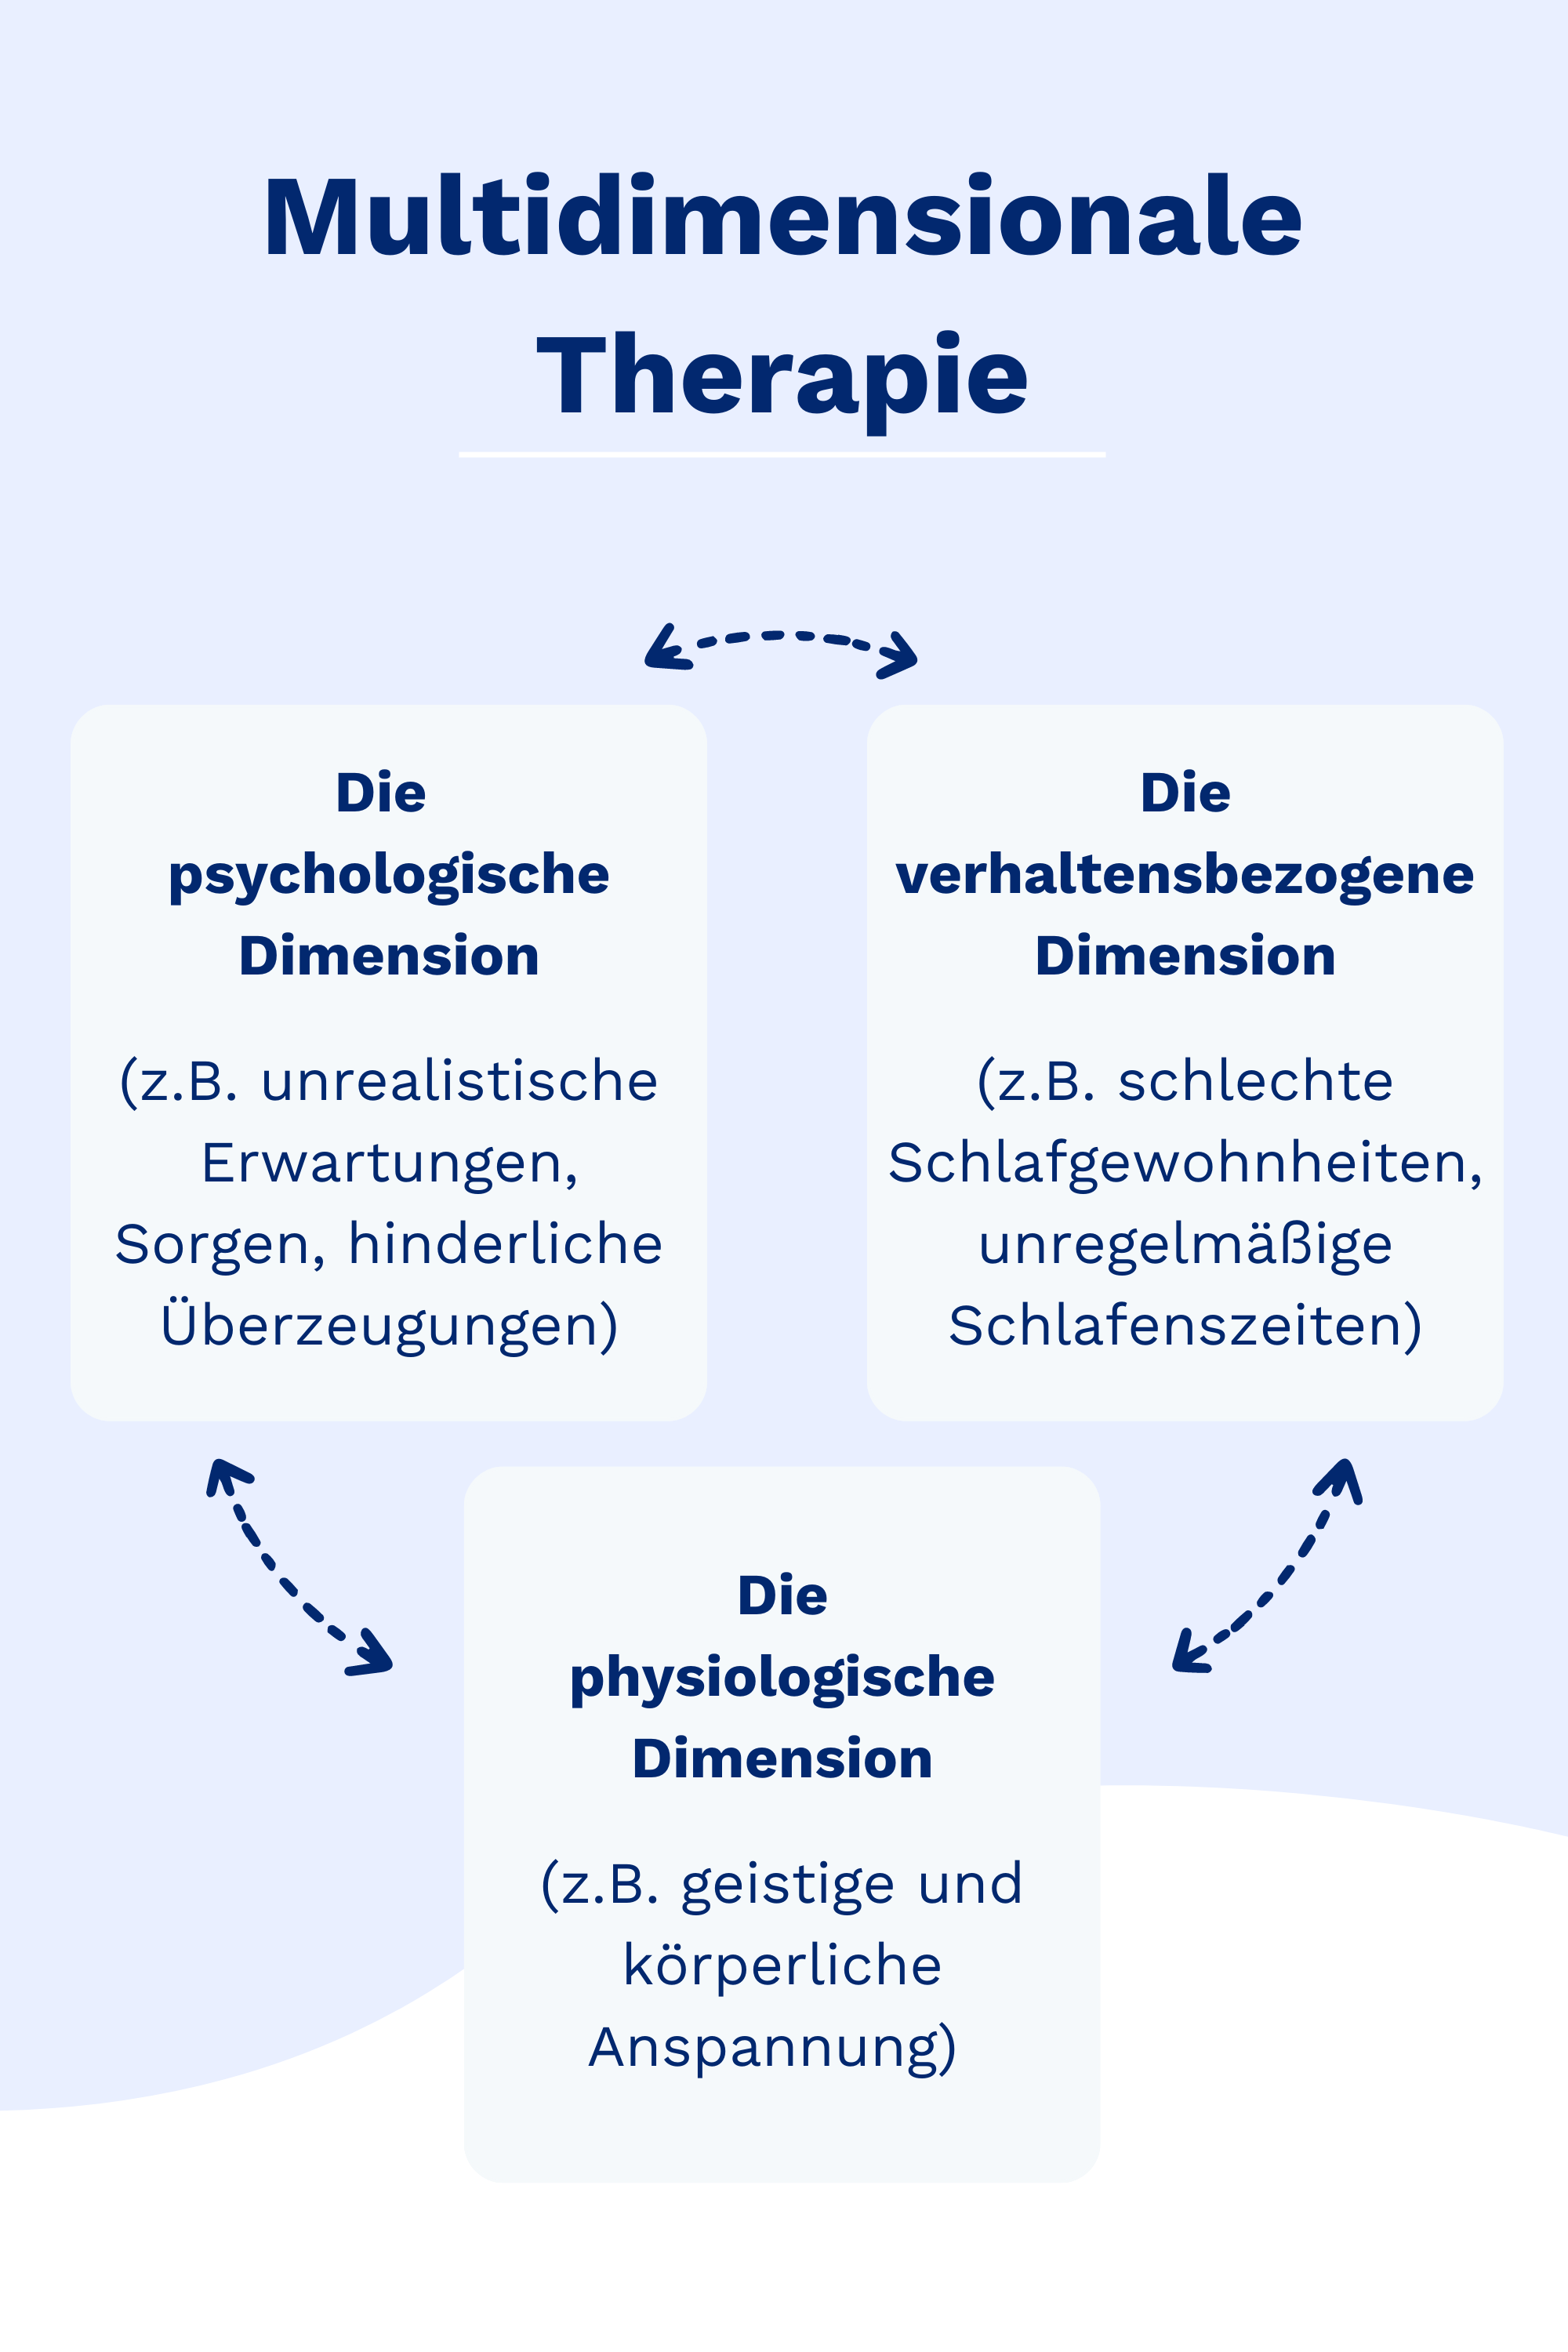 Multidimensionale Therapie Hochkant.png